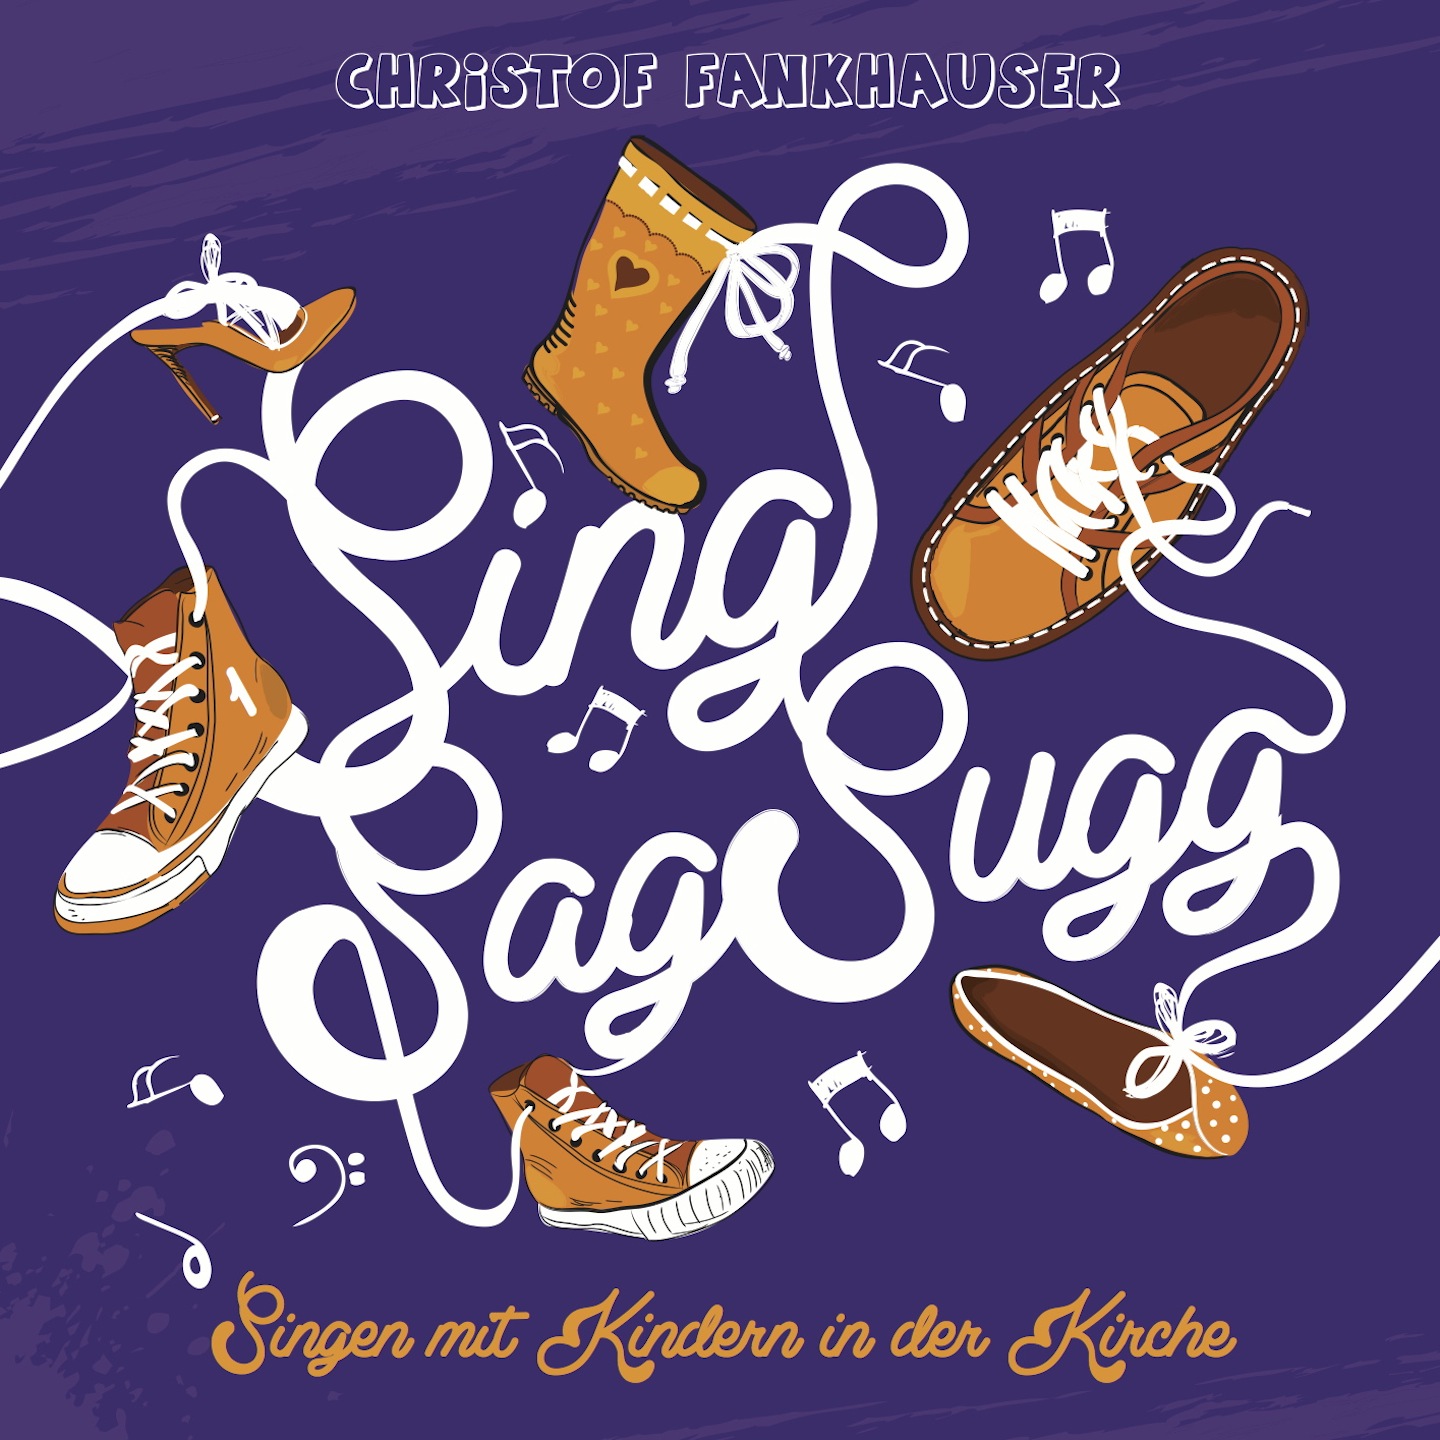 Sing Sag Sugg